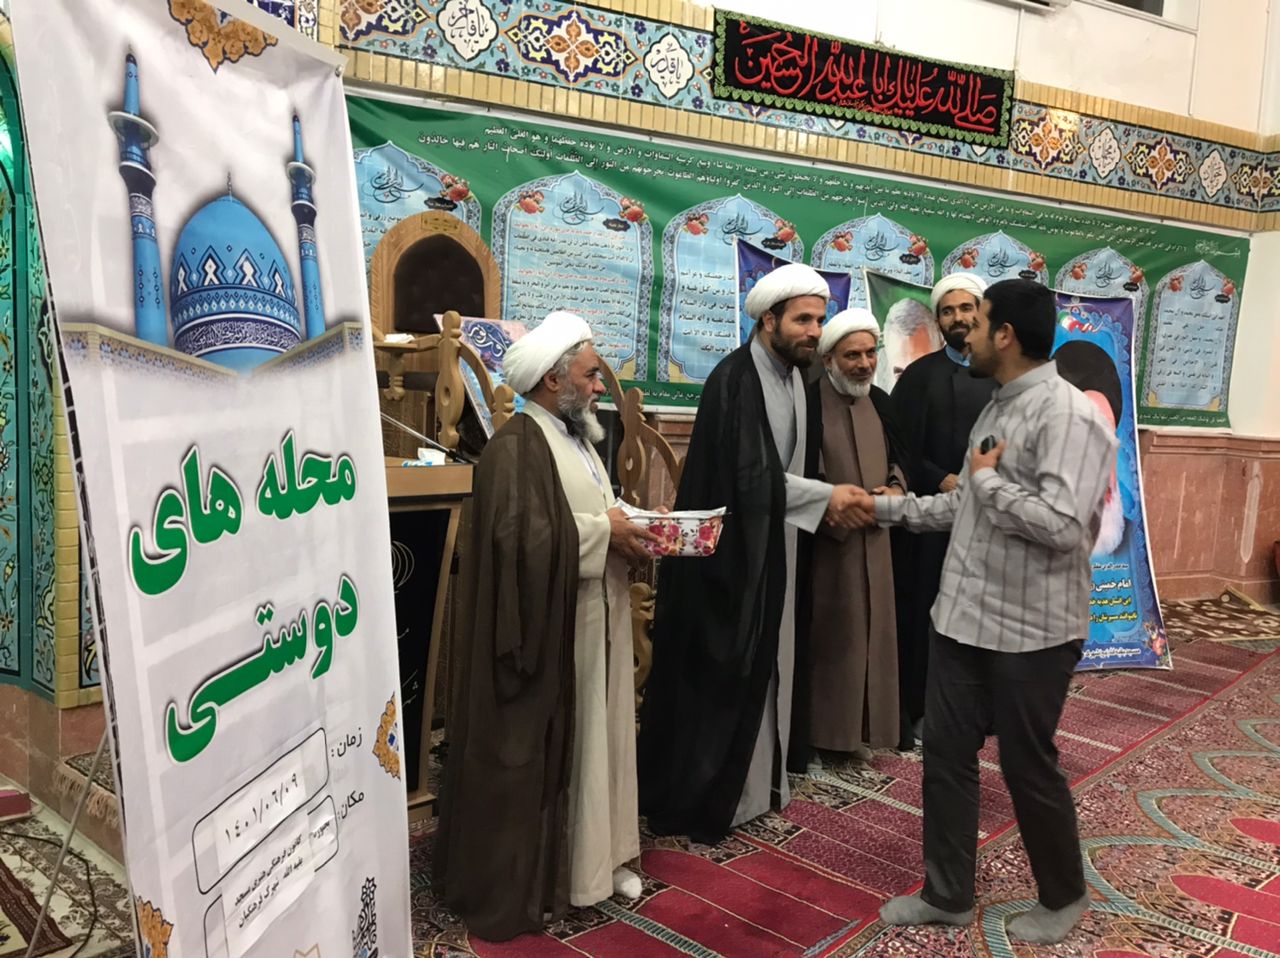 تقدير از فعالان اوقات فراغت کانون بقيه الله و طرح محله هاي دوستي در شهرک فرهنگيان بجنورد